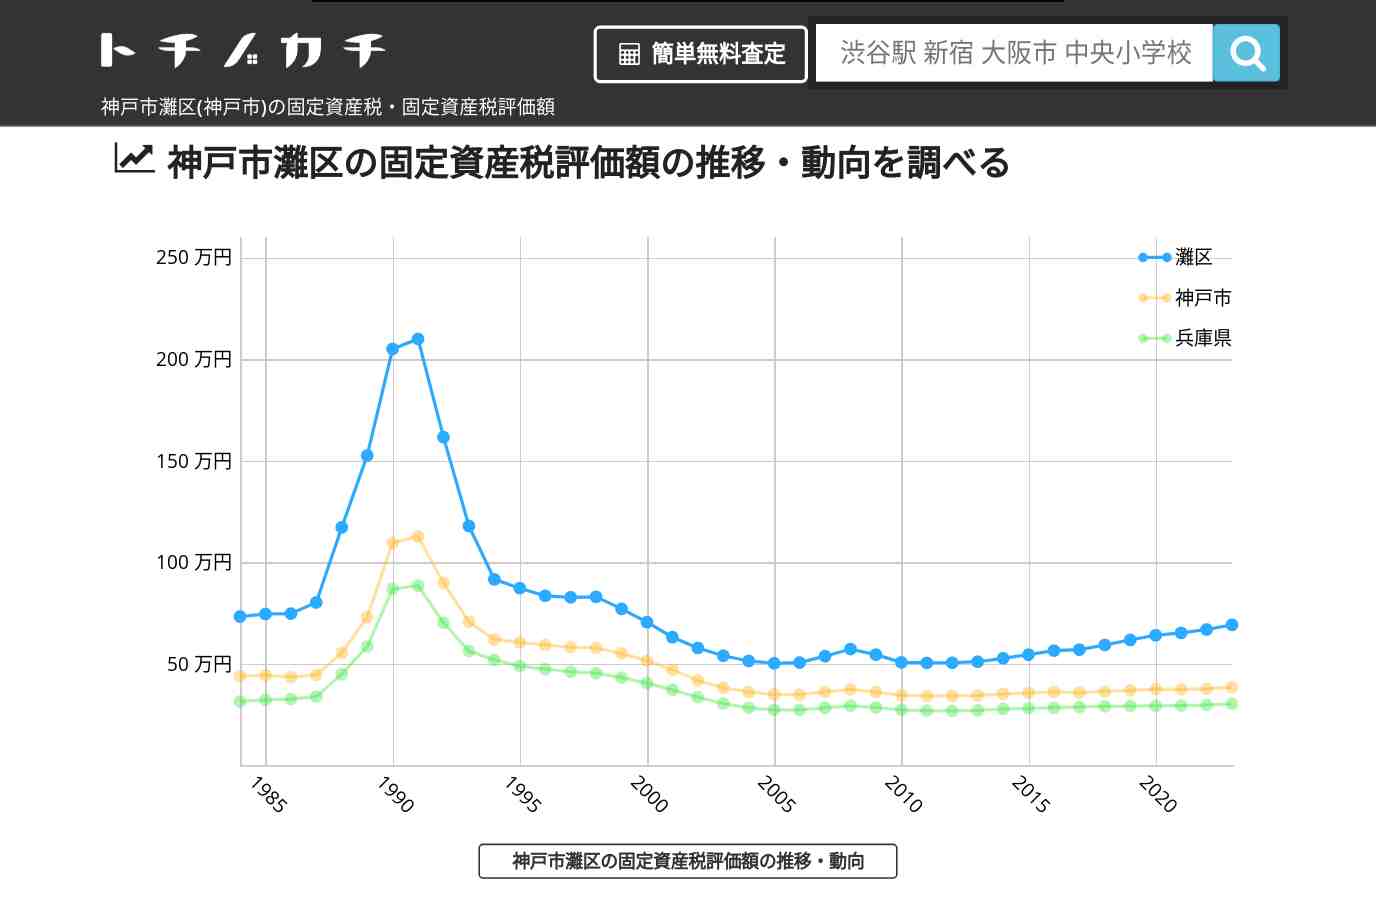 六甲小学校(兵庫県 神戸市 灘区)周辺の固定資産税・固定資産税評価額 | トチノカチ